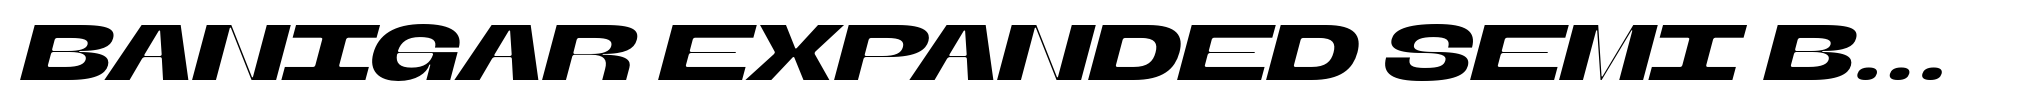 Banigar Expanded Semi Bold Italic image